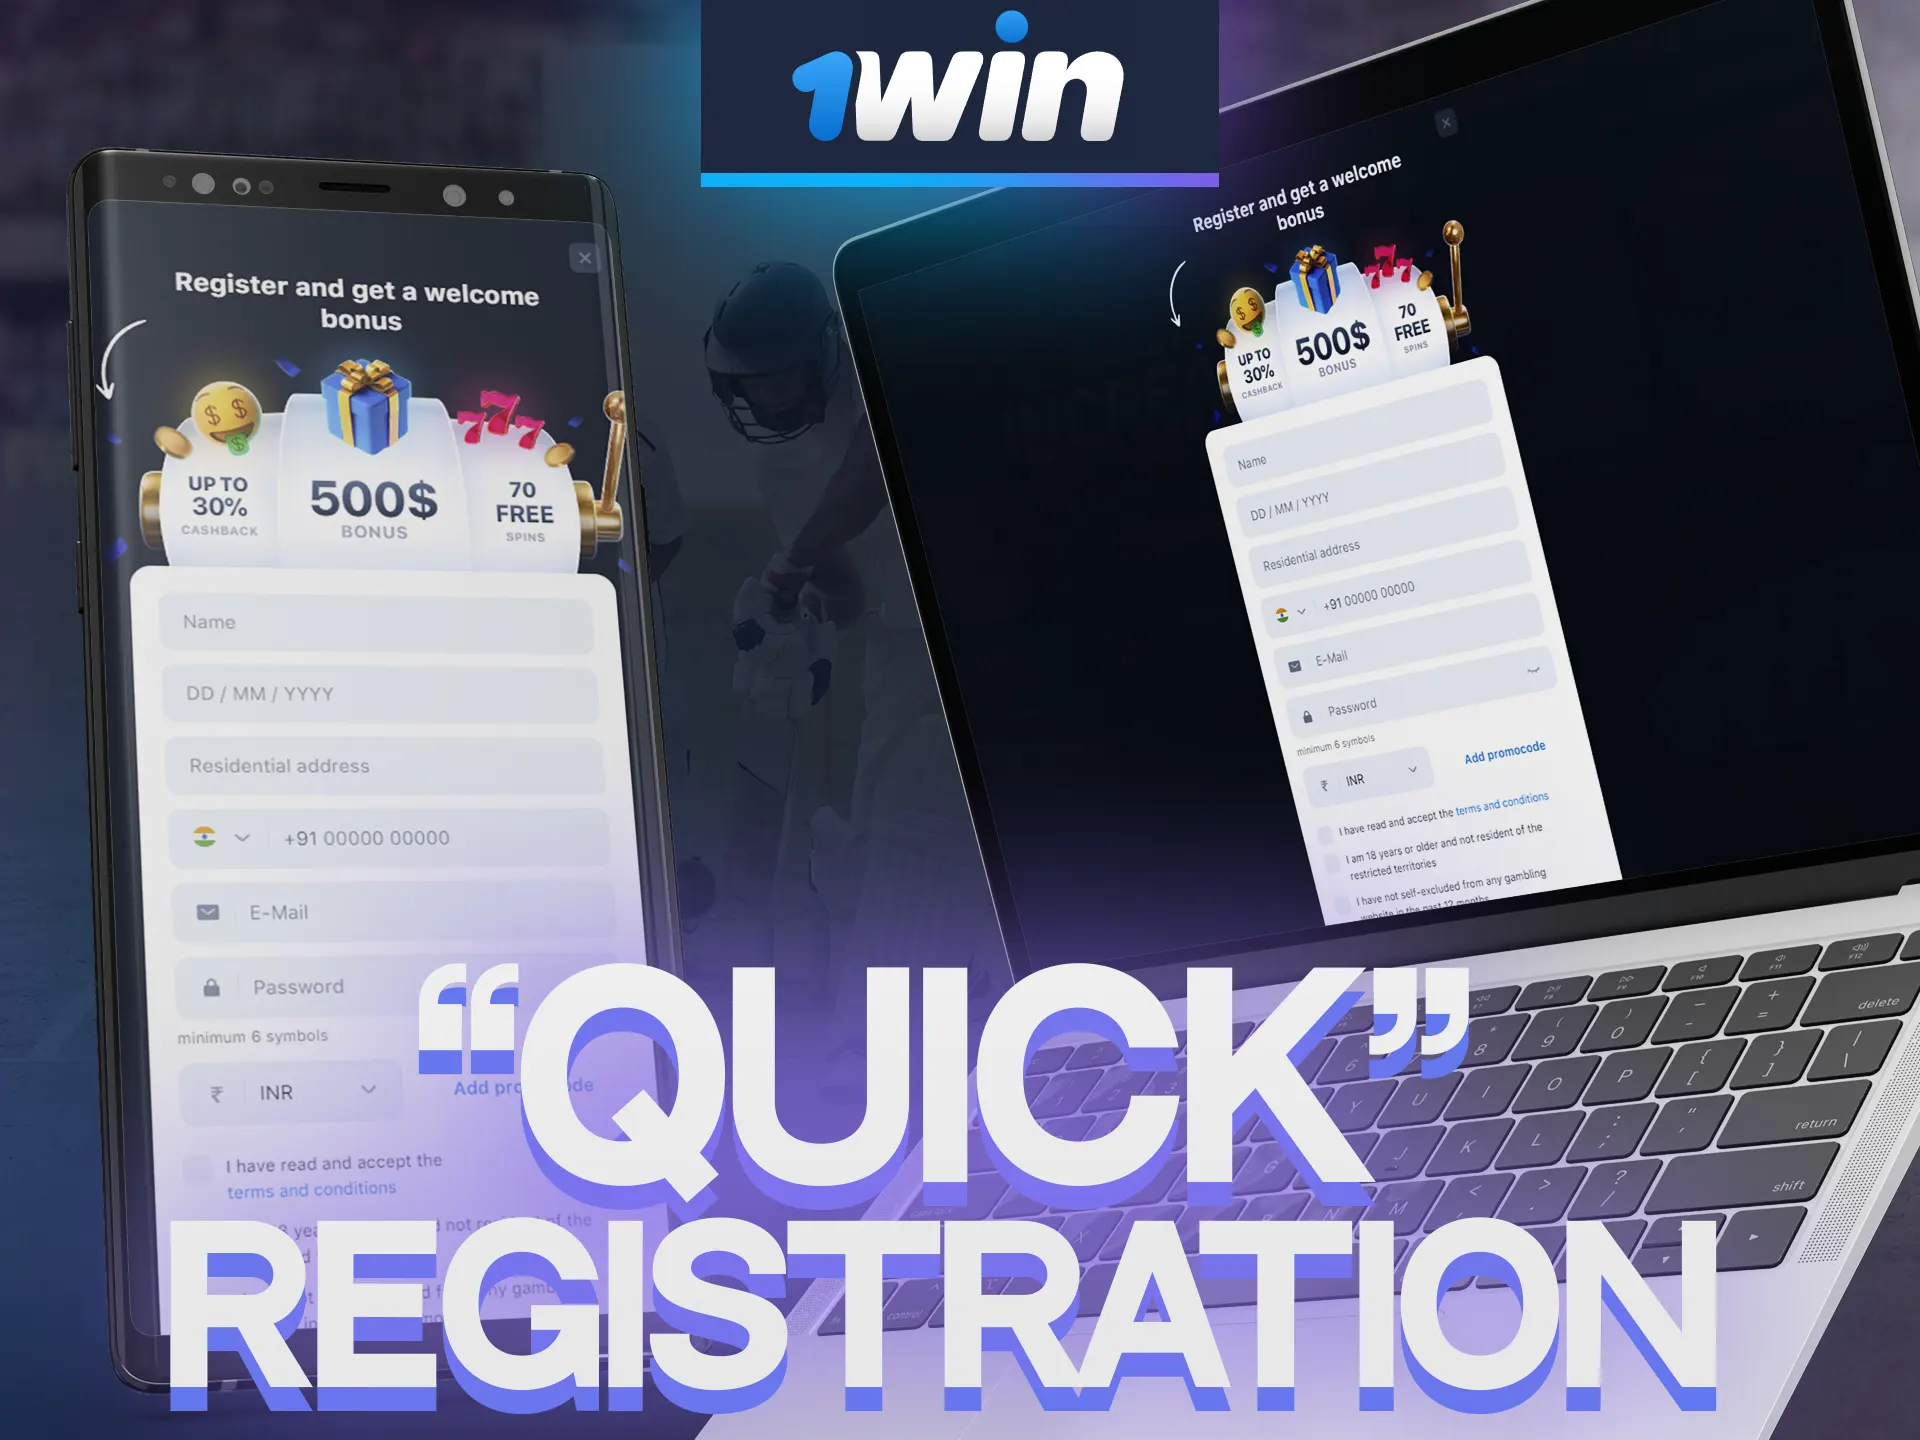 Take advantage of 1Win's quick registration.